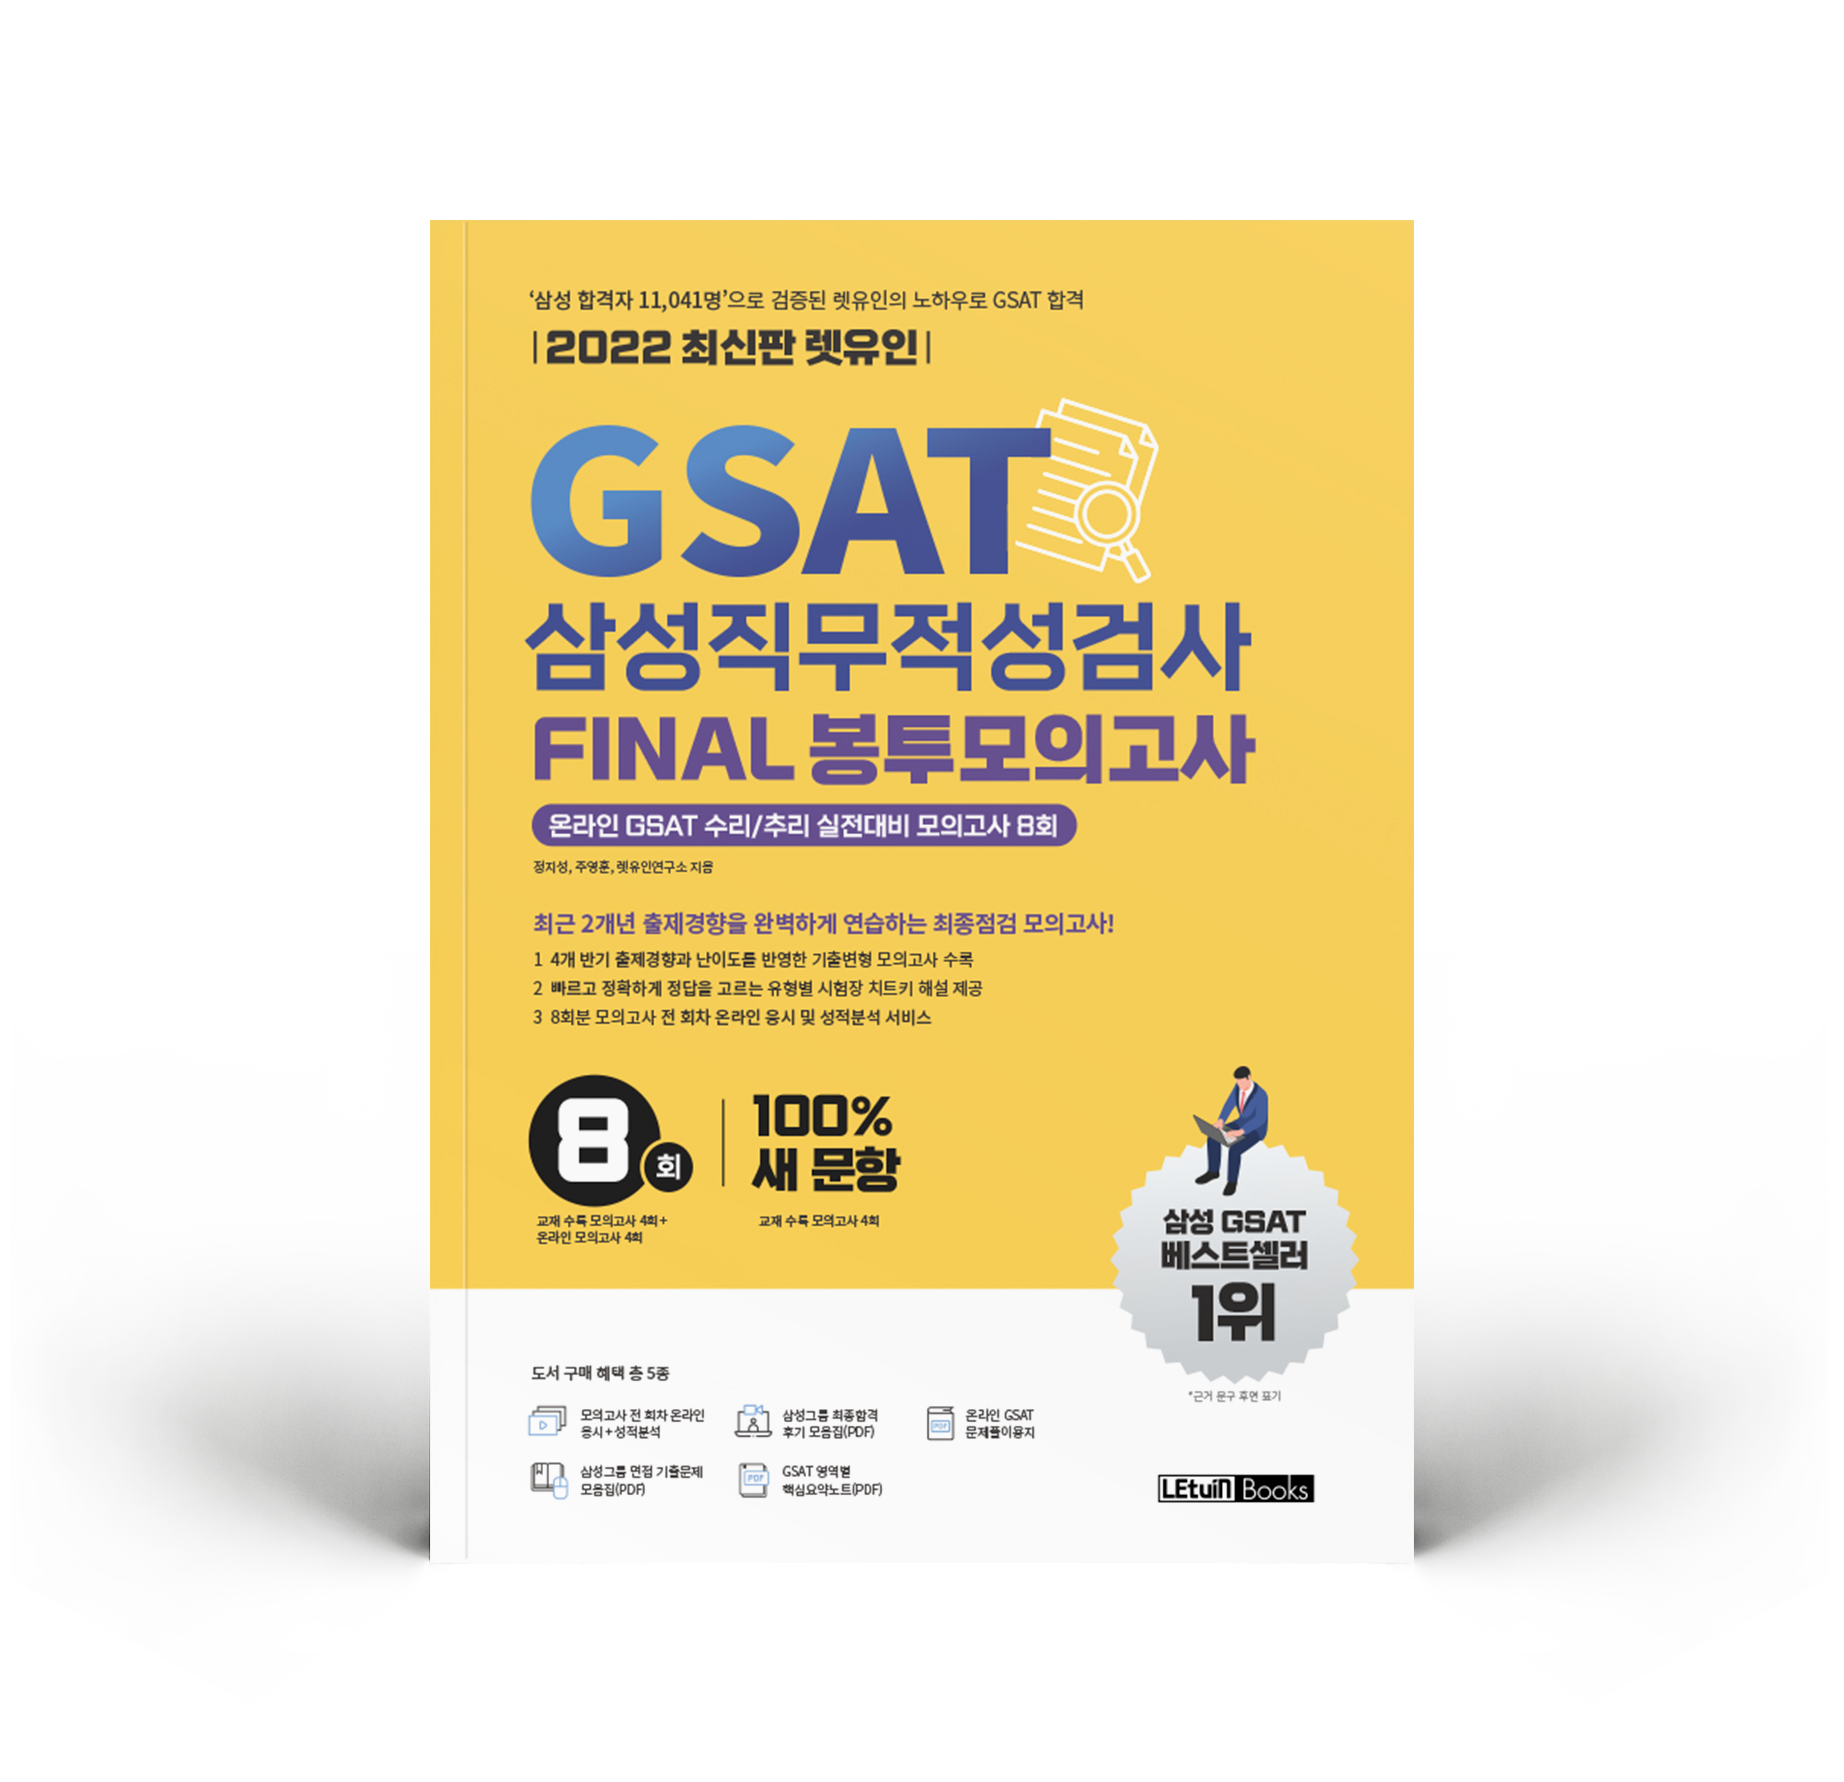 2022 최신판 렛유인 GSAT 삼성직무적성검사 FINAL 봉투모의고사